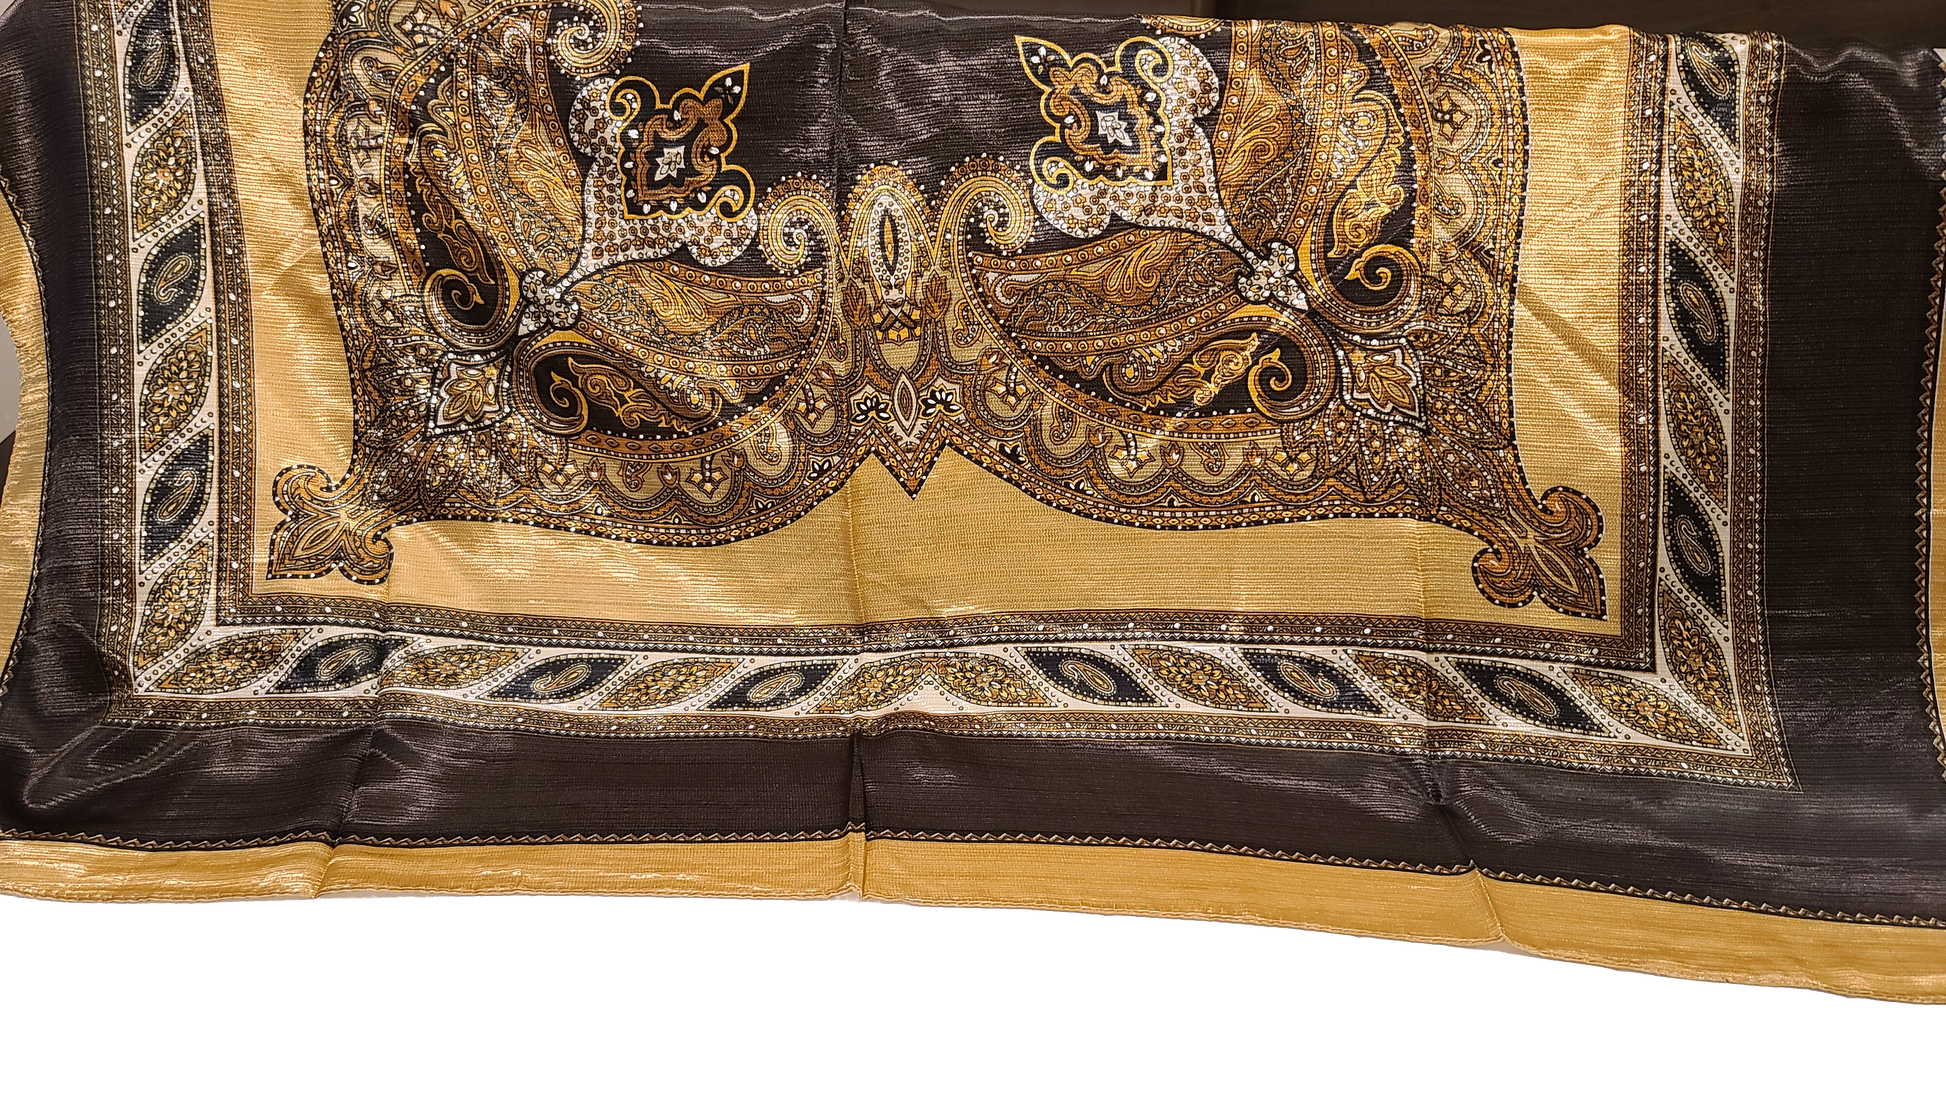 Printed Satin Silk Square Scarves - ElegantScarves.CA